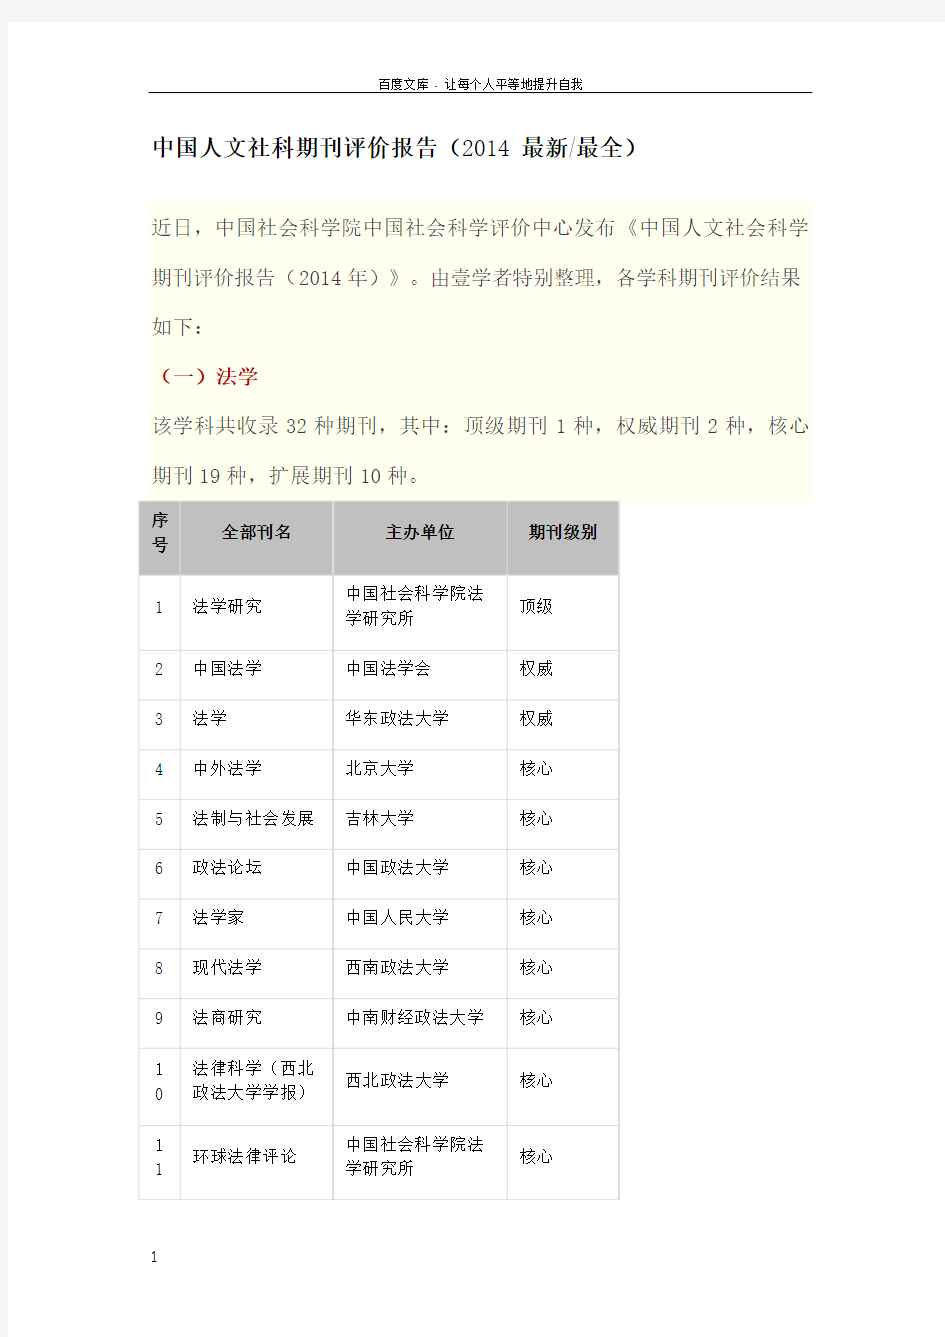 中国人文社科核心期刊目录(2014最新最全)